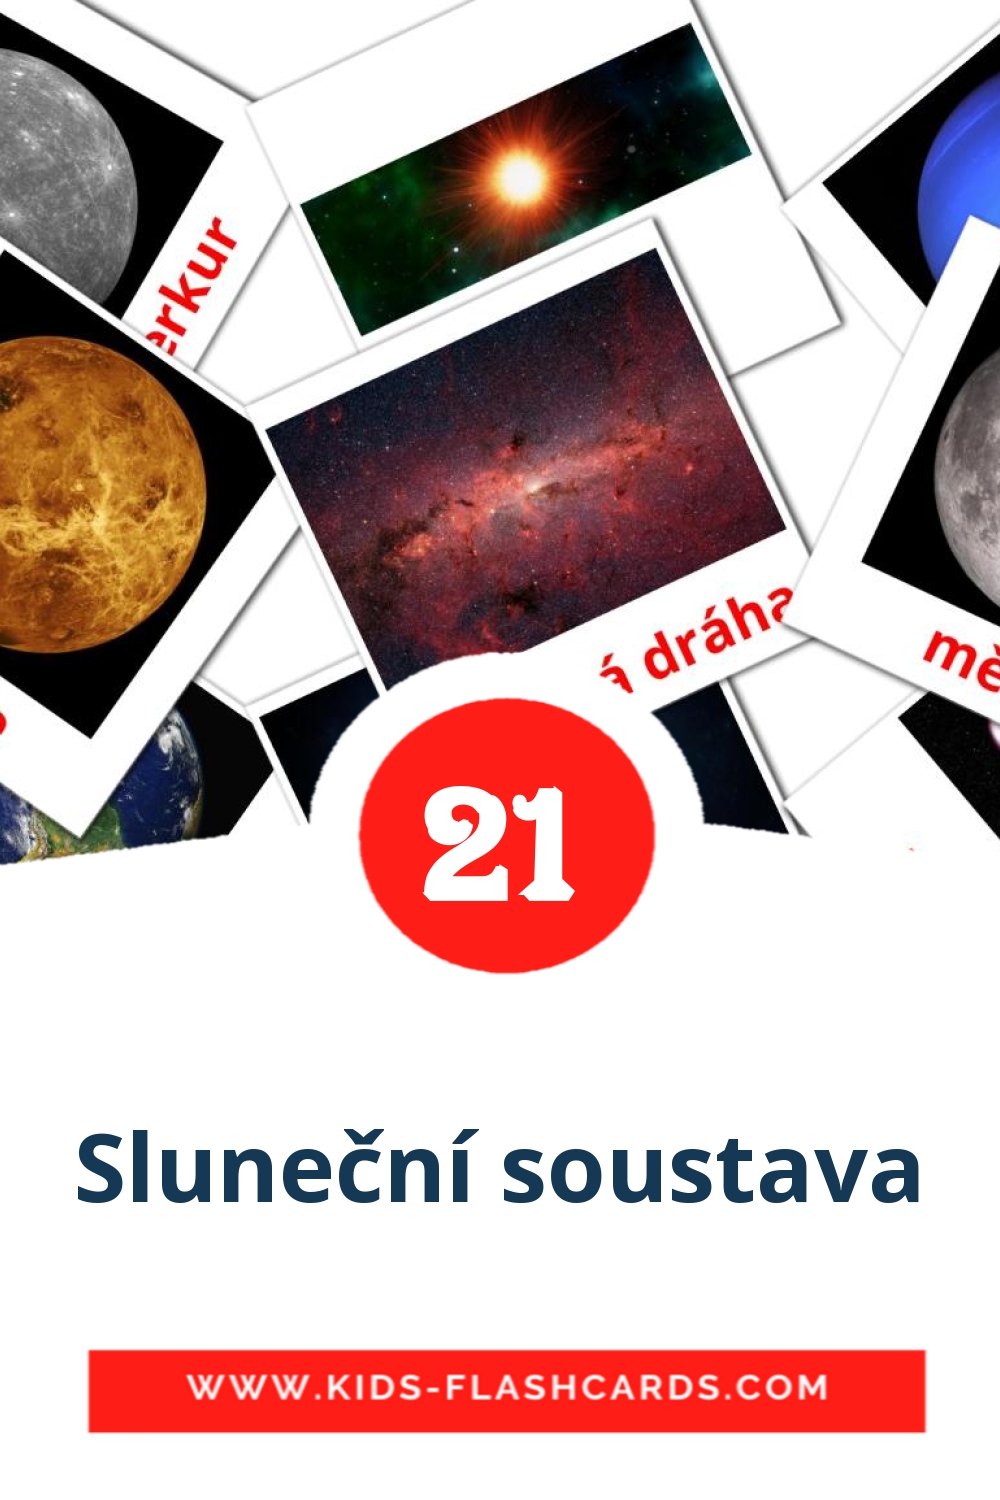 Sluneční soustava на чешском для Детского Сада (21 карточка)